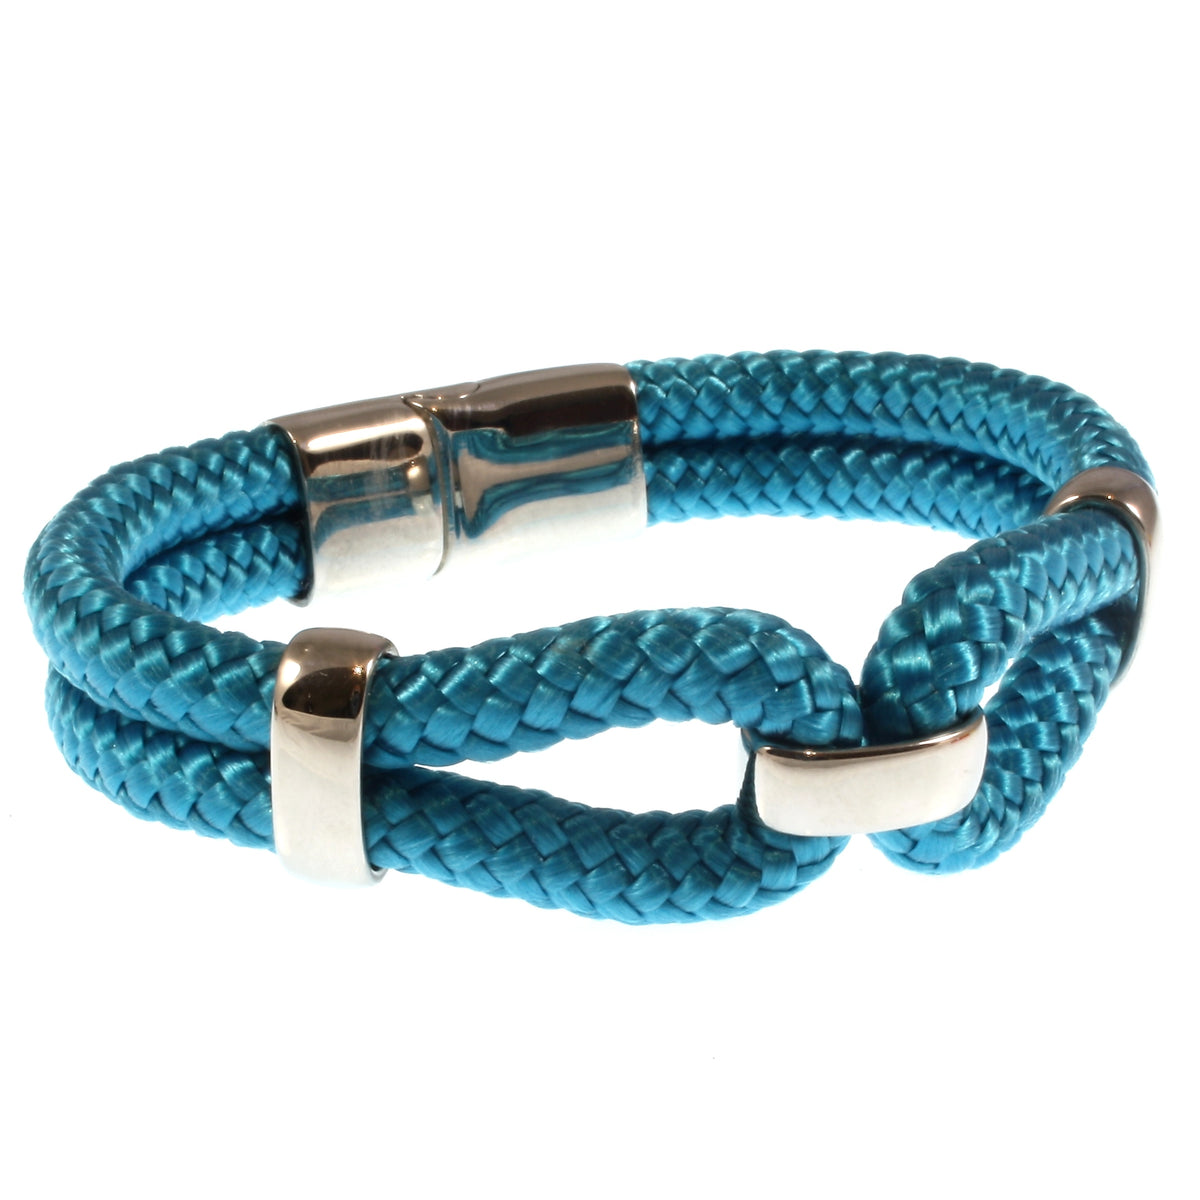 Damen-Segeltau-armband-roma-blau-geflochten-Edelstahlverschluss-vorn-wavepirate-shop-st